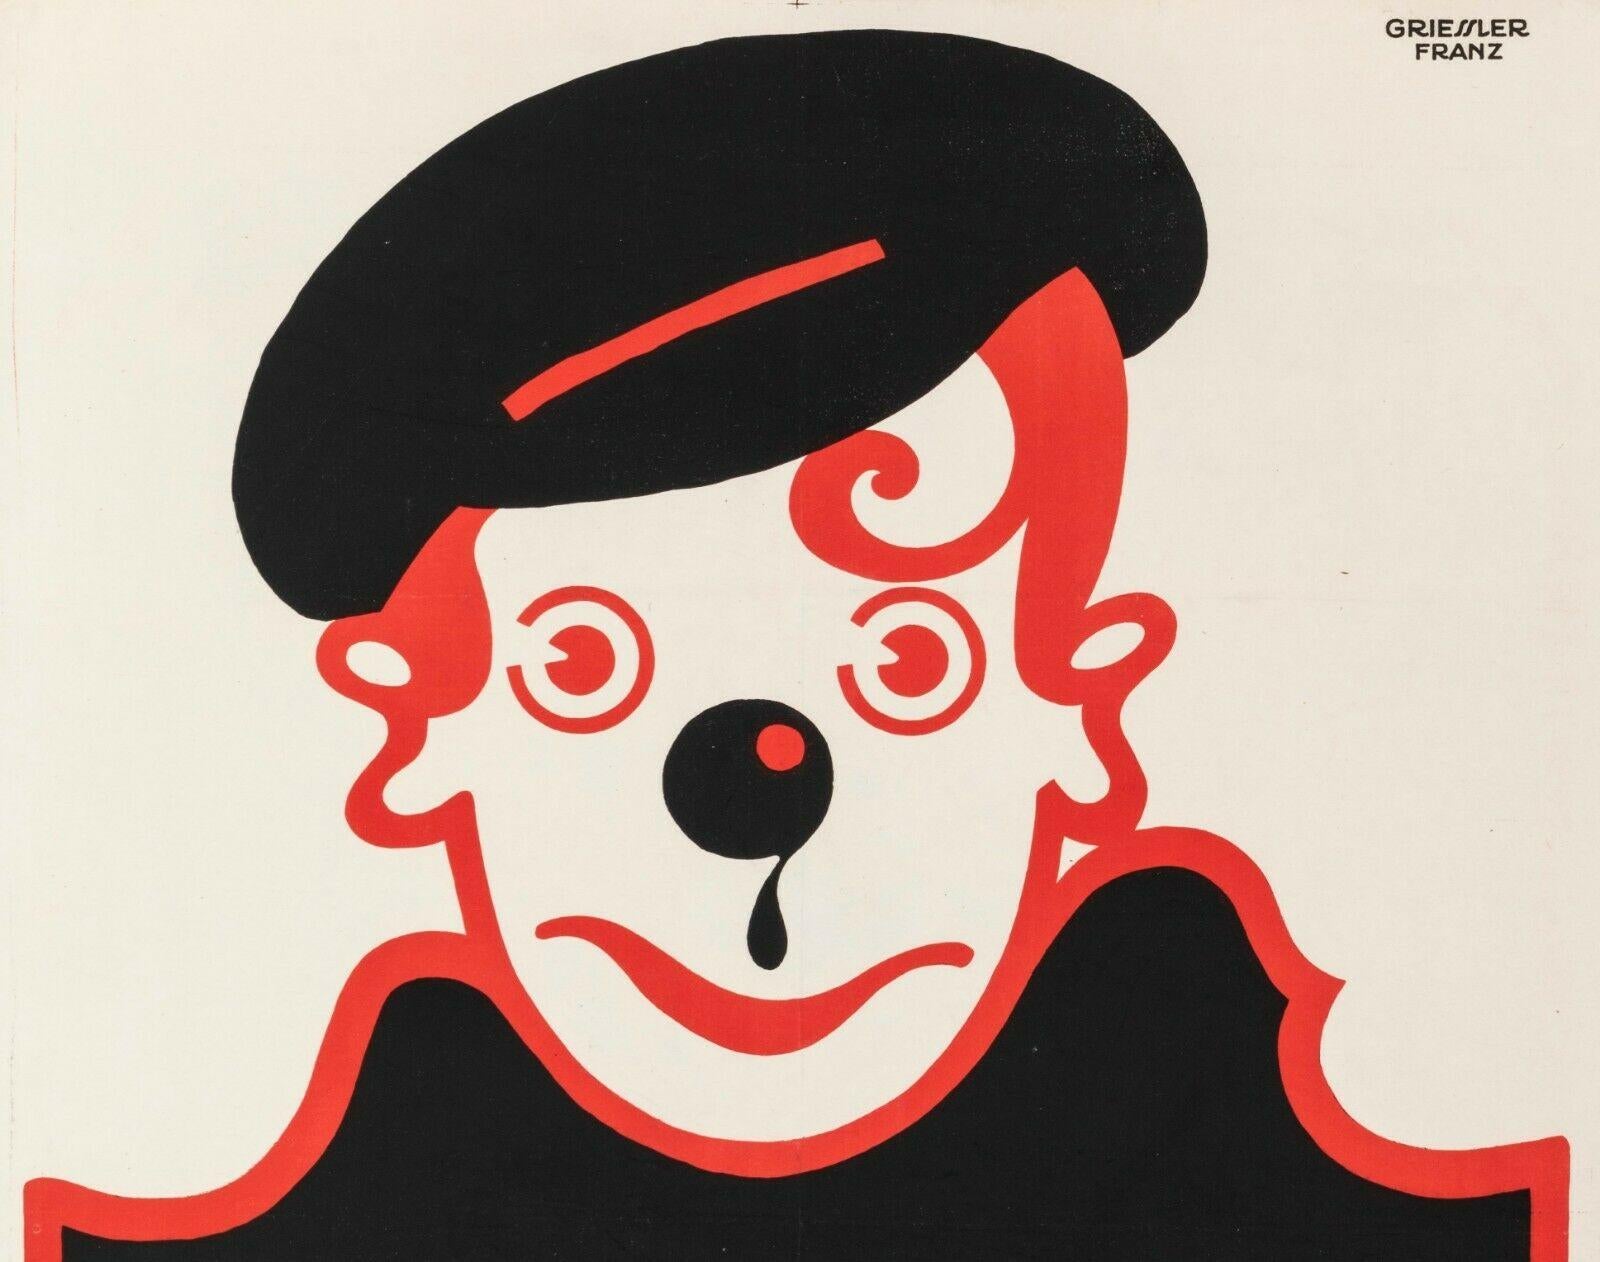 Original Vintage Poster Färberei - Wien - Ûbernimmt Hauswäsche aus den 1920er Jahren von Franz Anton Griessler.

Franz Anton Griessler ist ein österreichischer Maler und Grafiker, der 1897 in Wien (Österreich) geboren wurde und 1974 in Honolulu